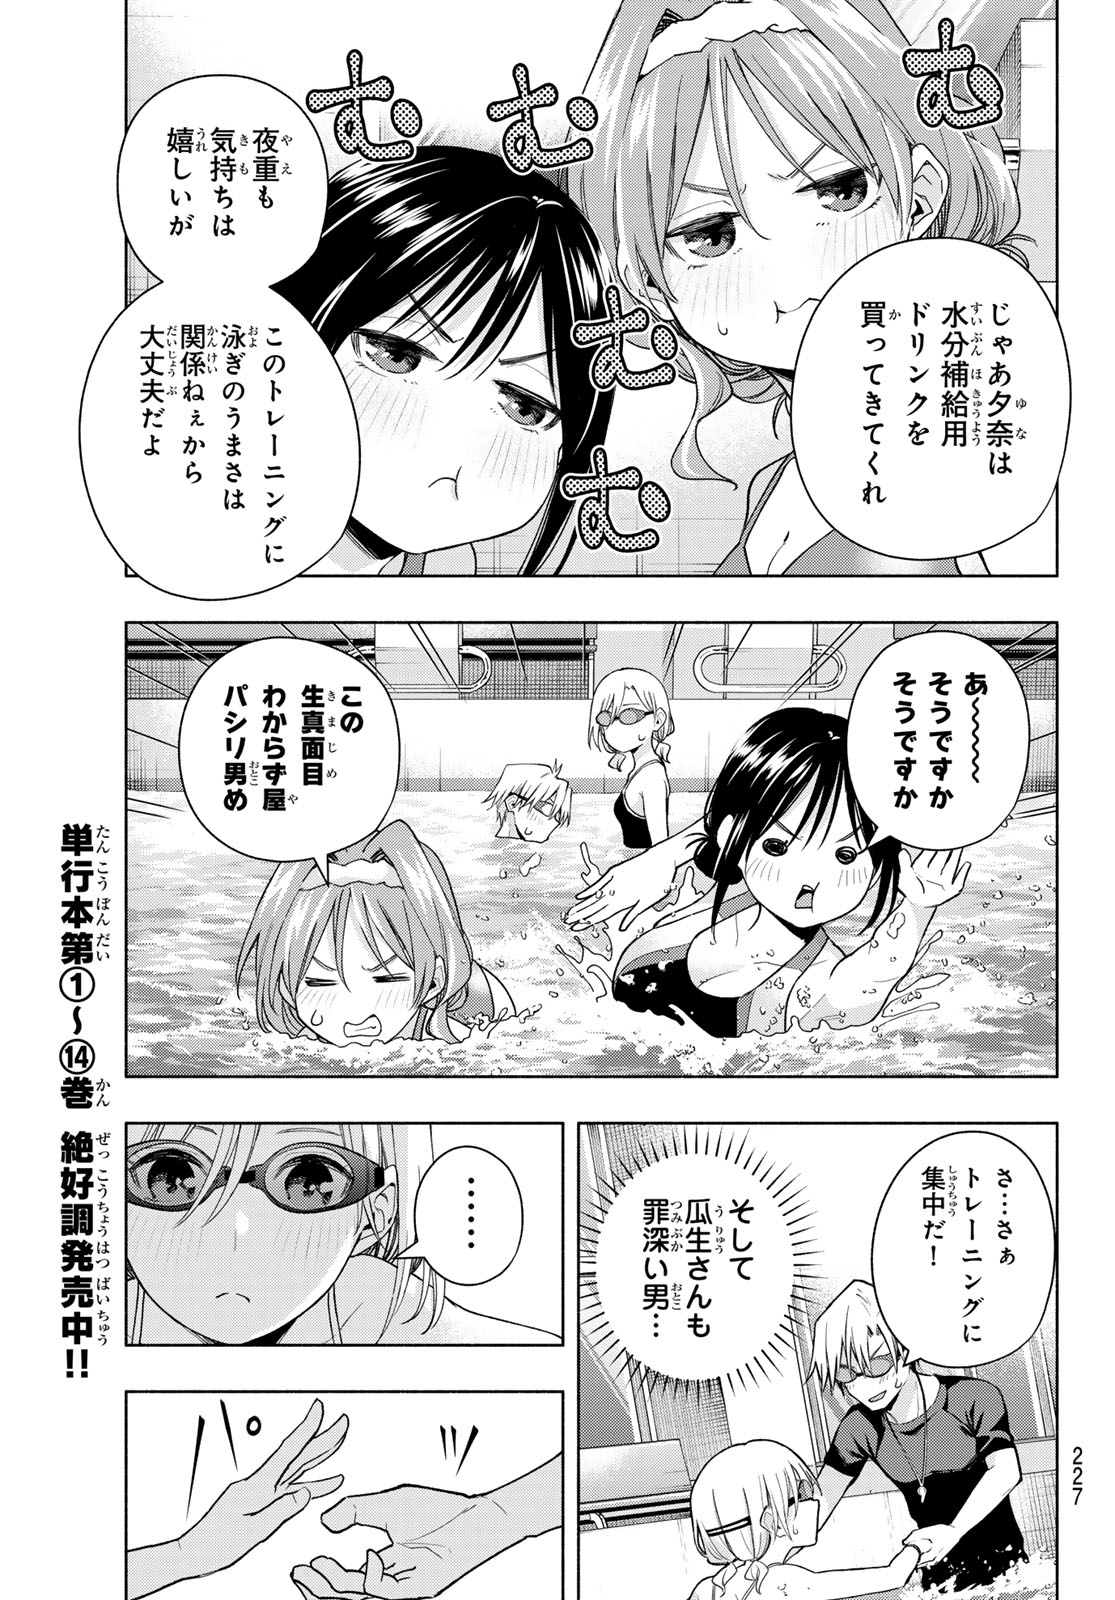 Amagami-san Chi no Enmusubi - Chapter 137 - Page 11